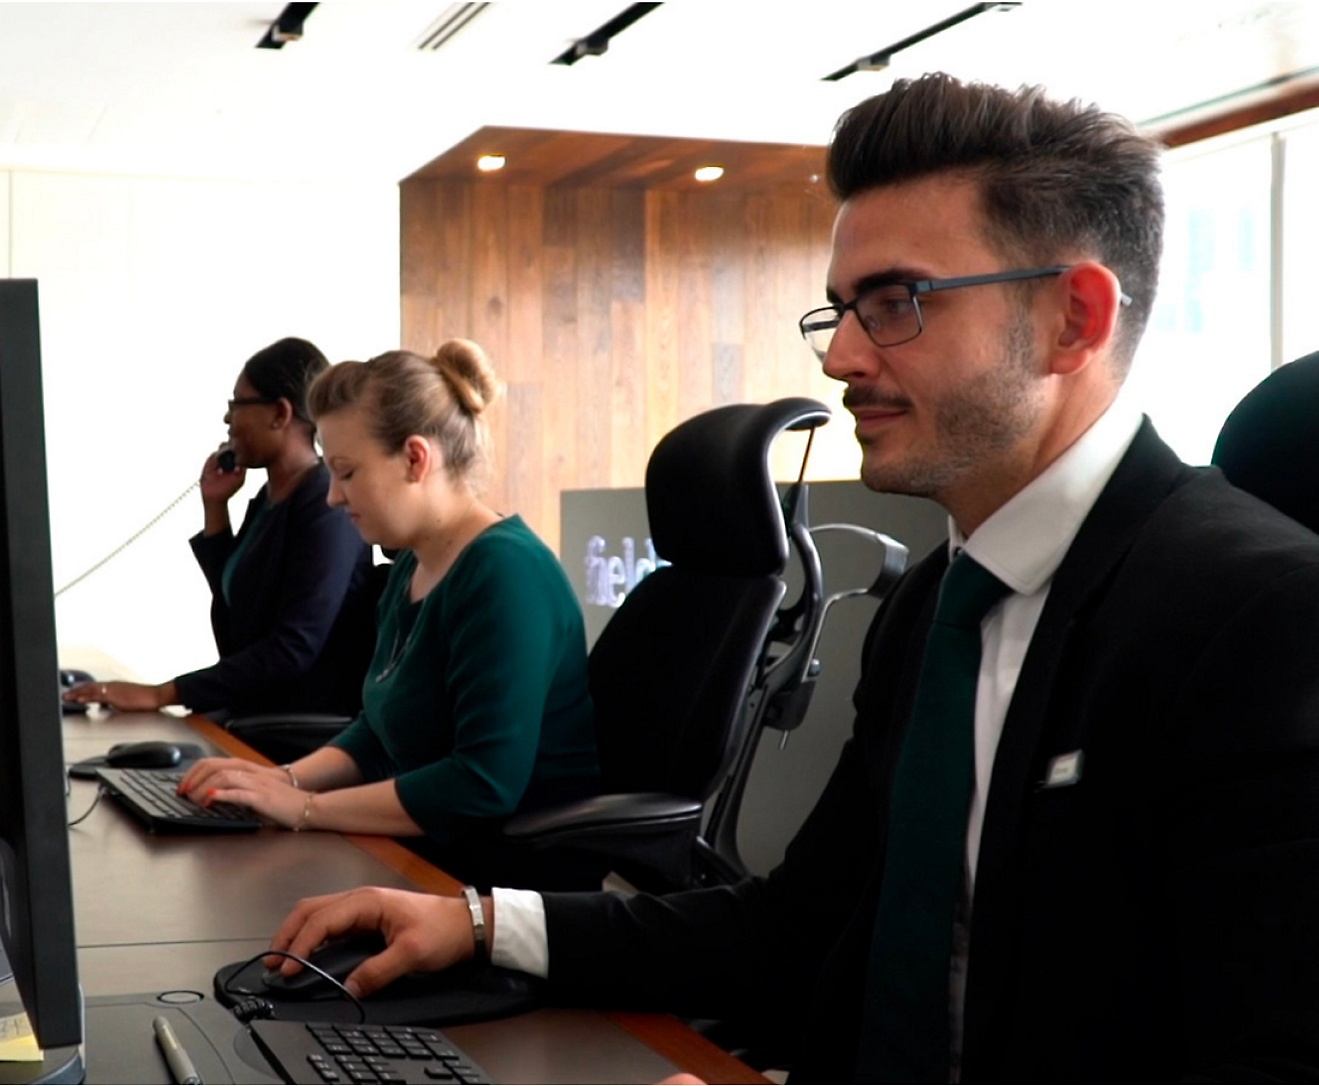 En gruppe personer arbejder på computere på et kontor.